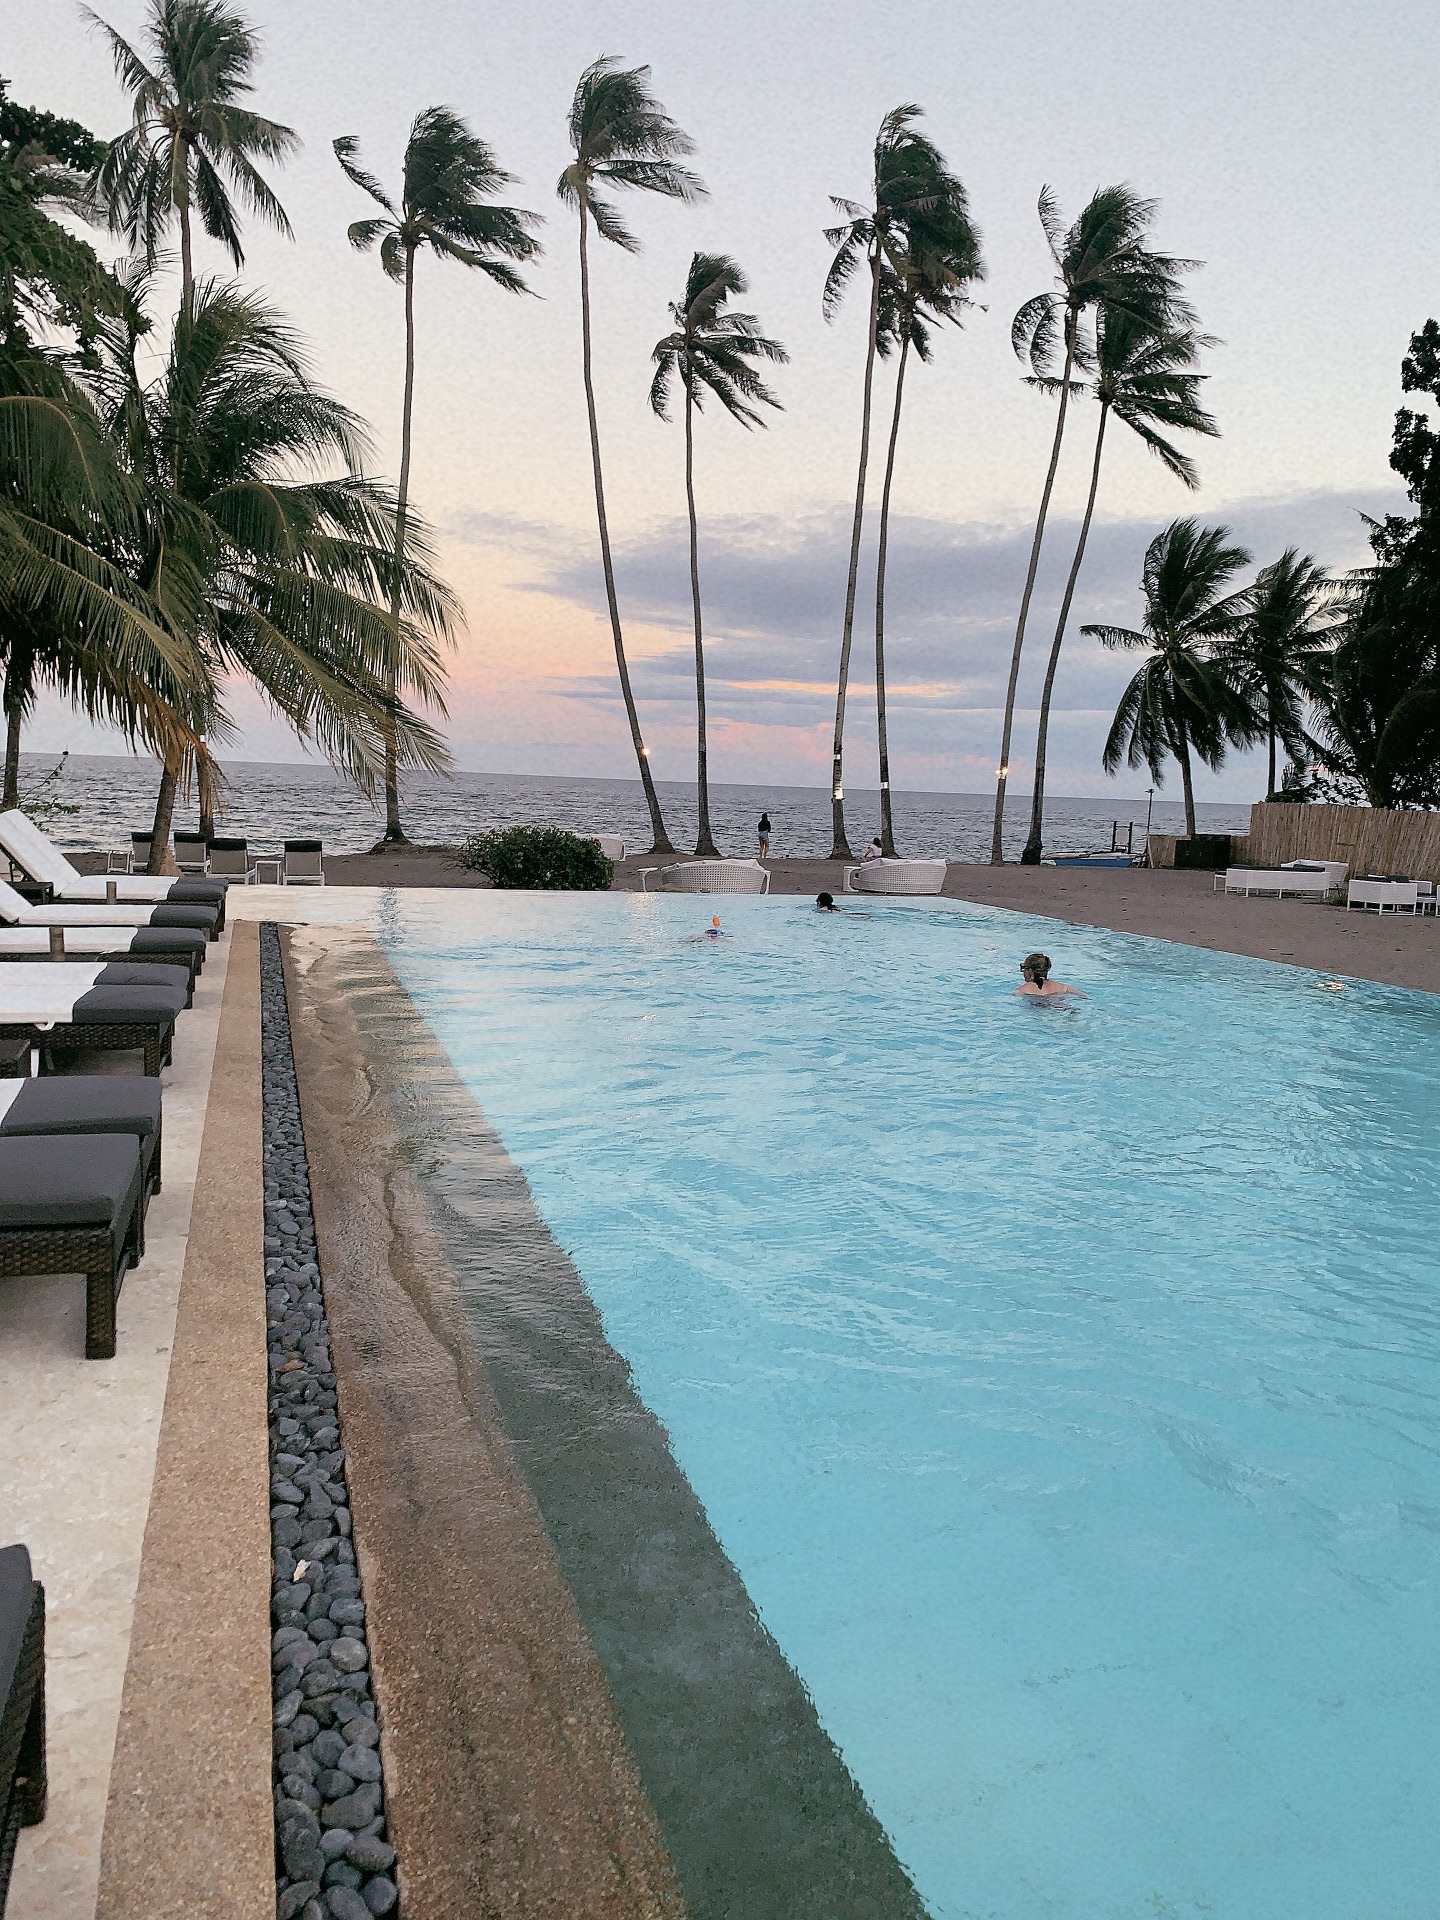 愉快的体验，酒店很有特色，非常漂亮，特别推荐酒店的潜水俱乐部，我们参加了跳岛游，每人2000P，跟淘